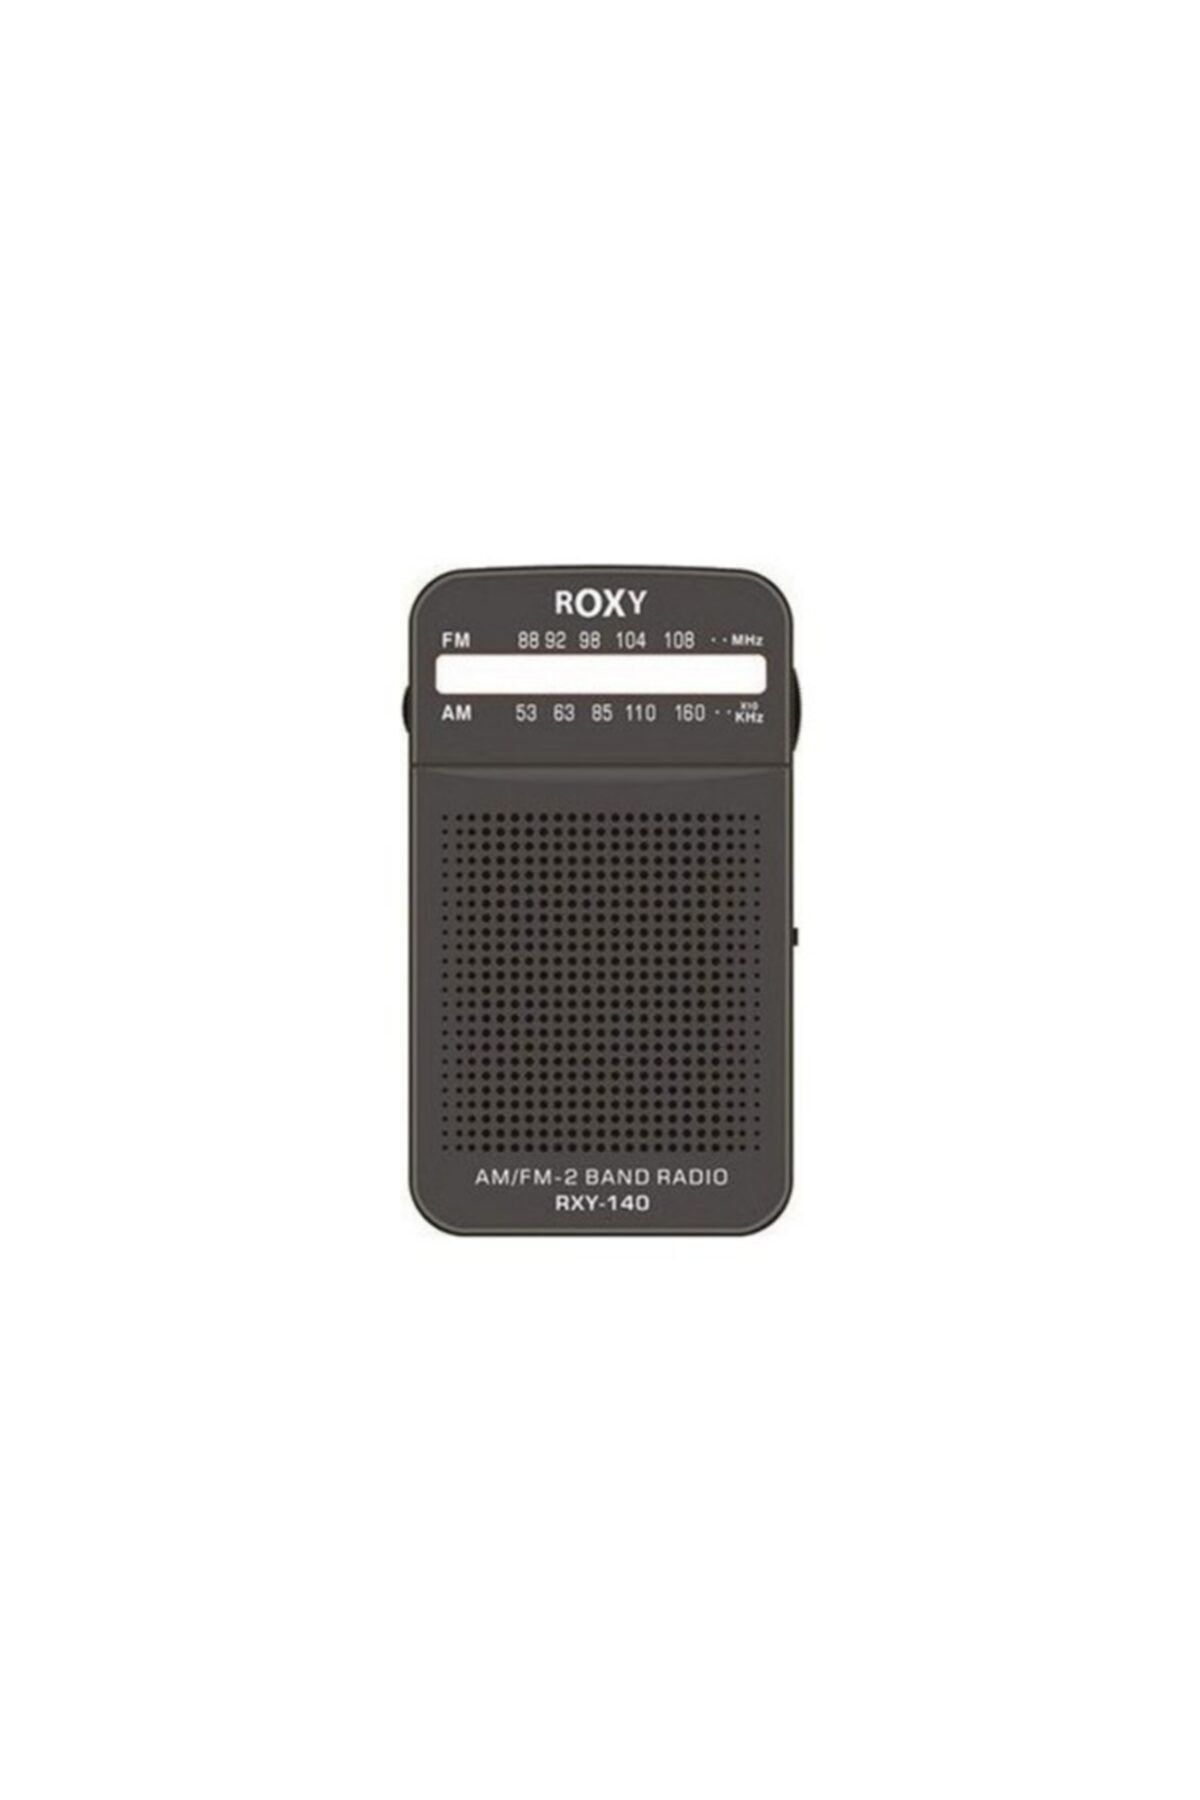 Roxy Rxy-140 Fm Cep Radyo